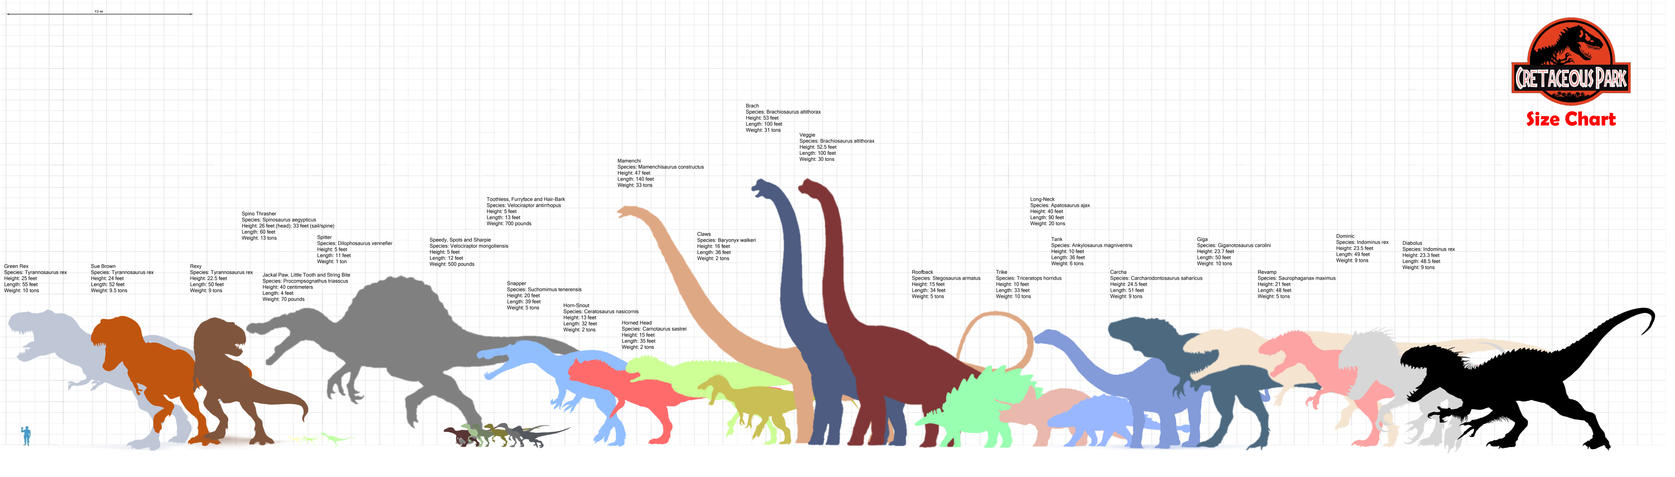 Cretaceous Park Size Chart by darbarrrr on DeviantArt